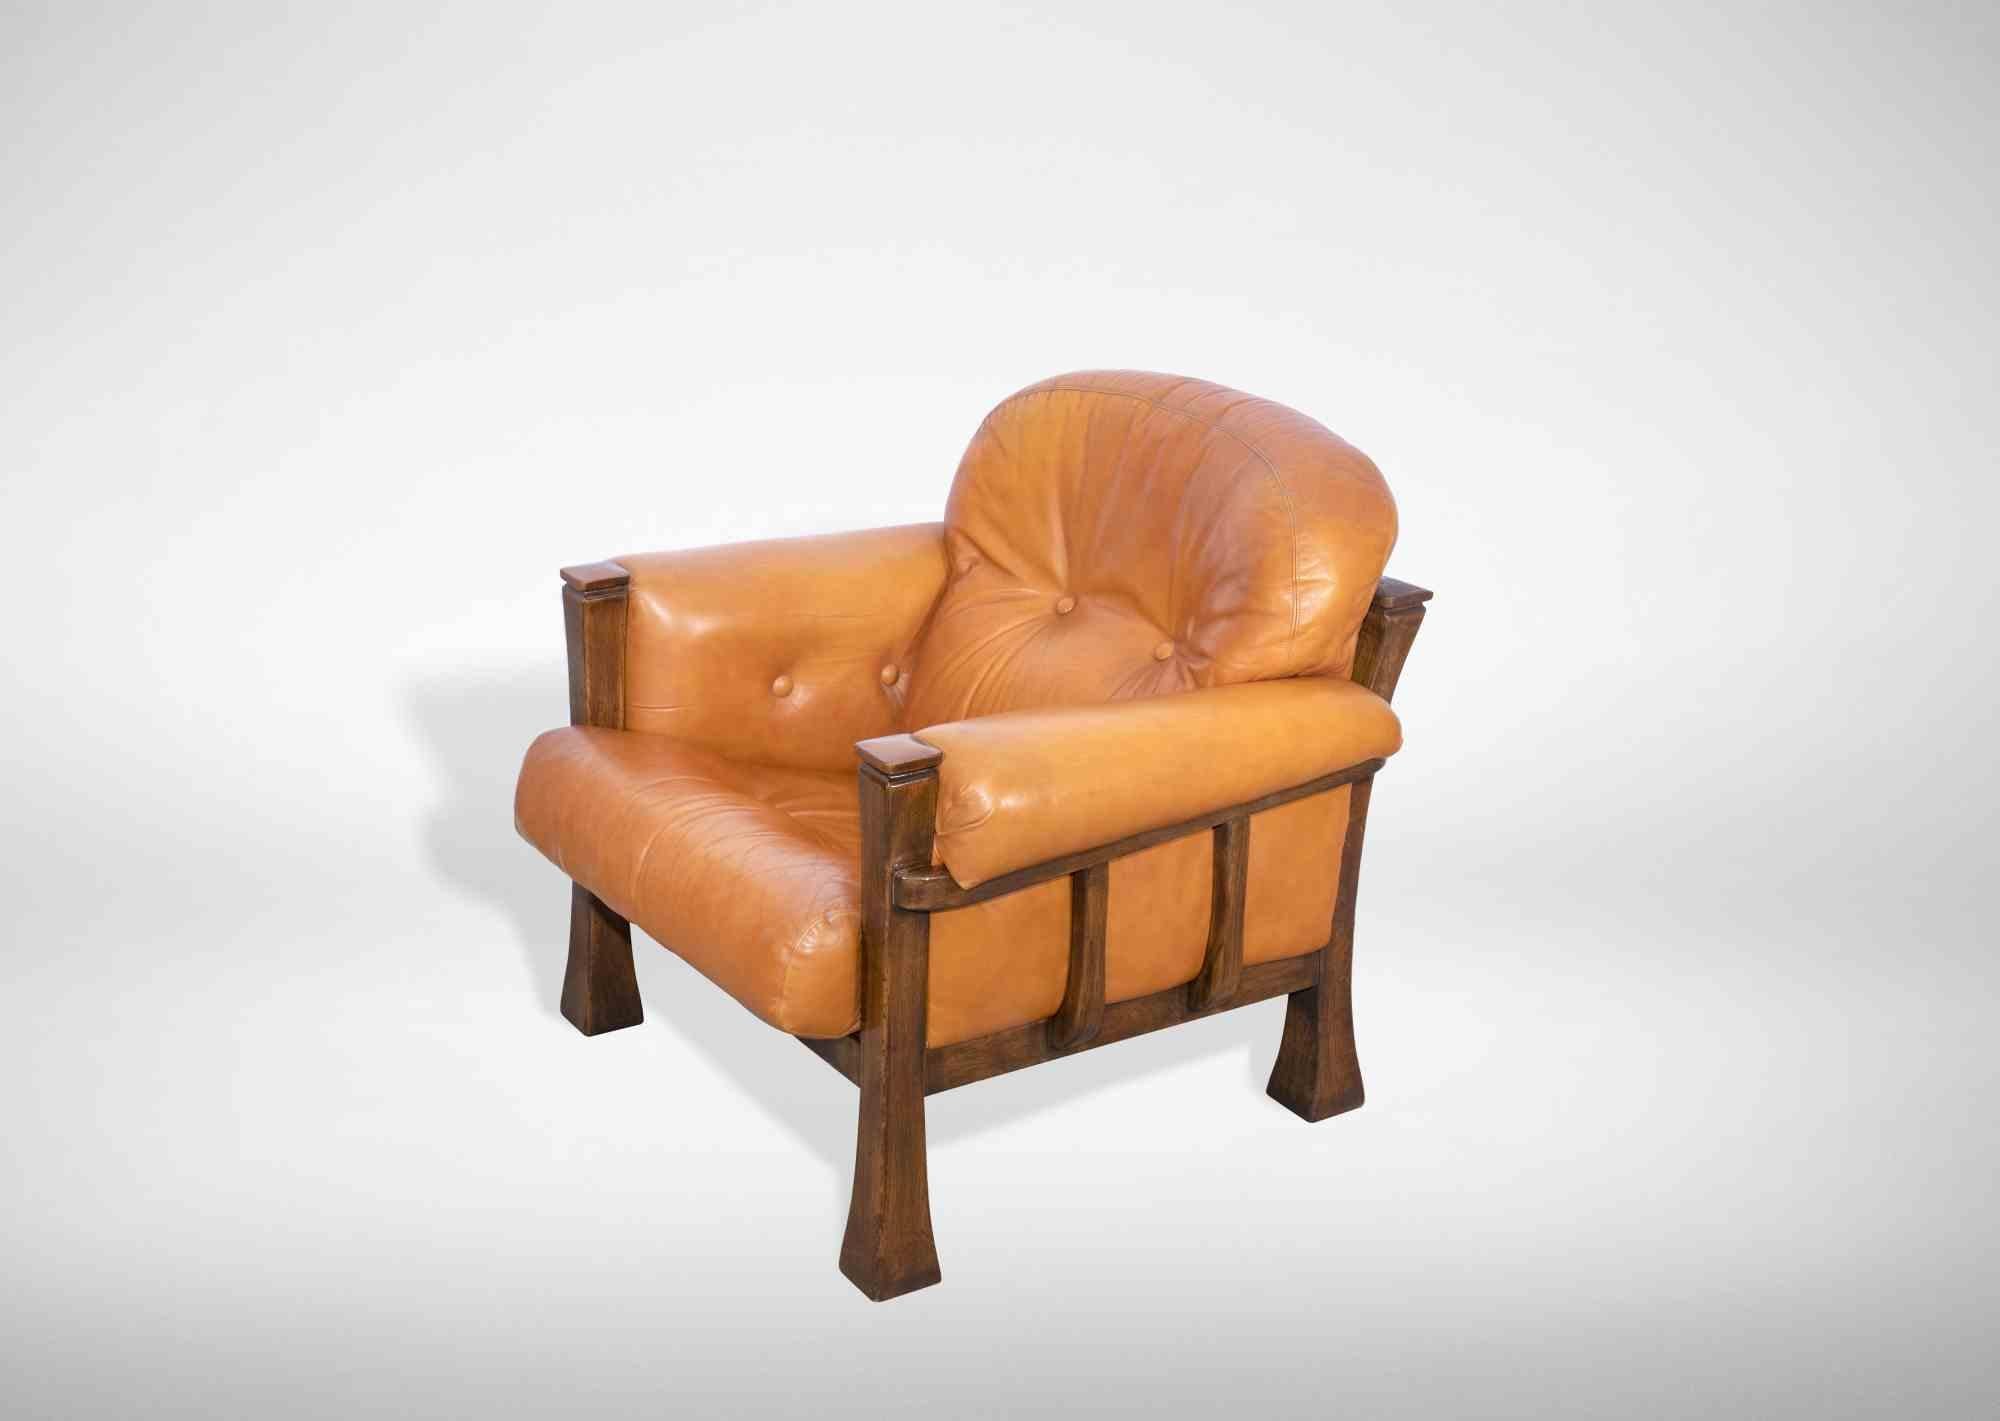 Das Set aus 2 Vintage-Sesseln ist ein originelles Designobjekt, das in den 1970er Jahren von Italian Production in Italien hergestellt wurde.

Holz und Leder,

Ausgezeichneter Zustand.

Abmessungen: H 82 / L. 95 / P 80 Sitzfläche 44 cm.
 